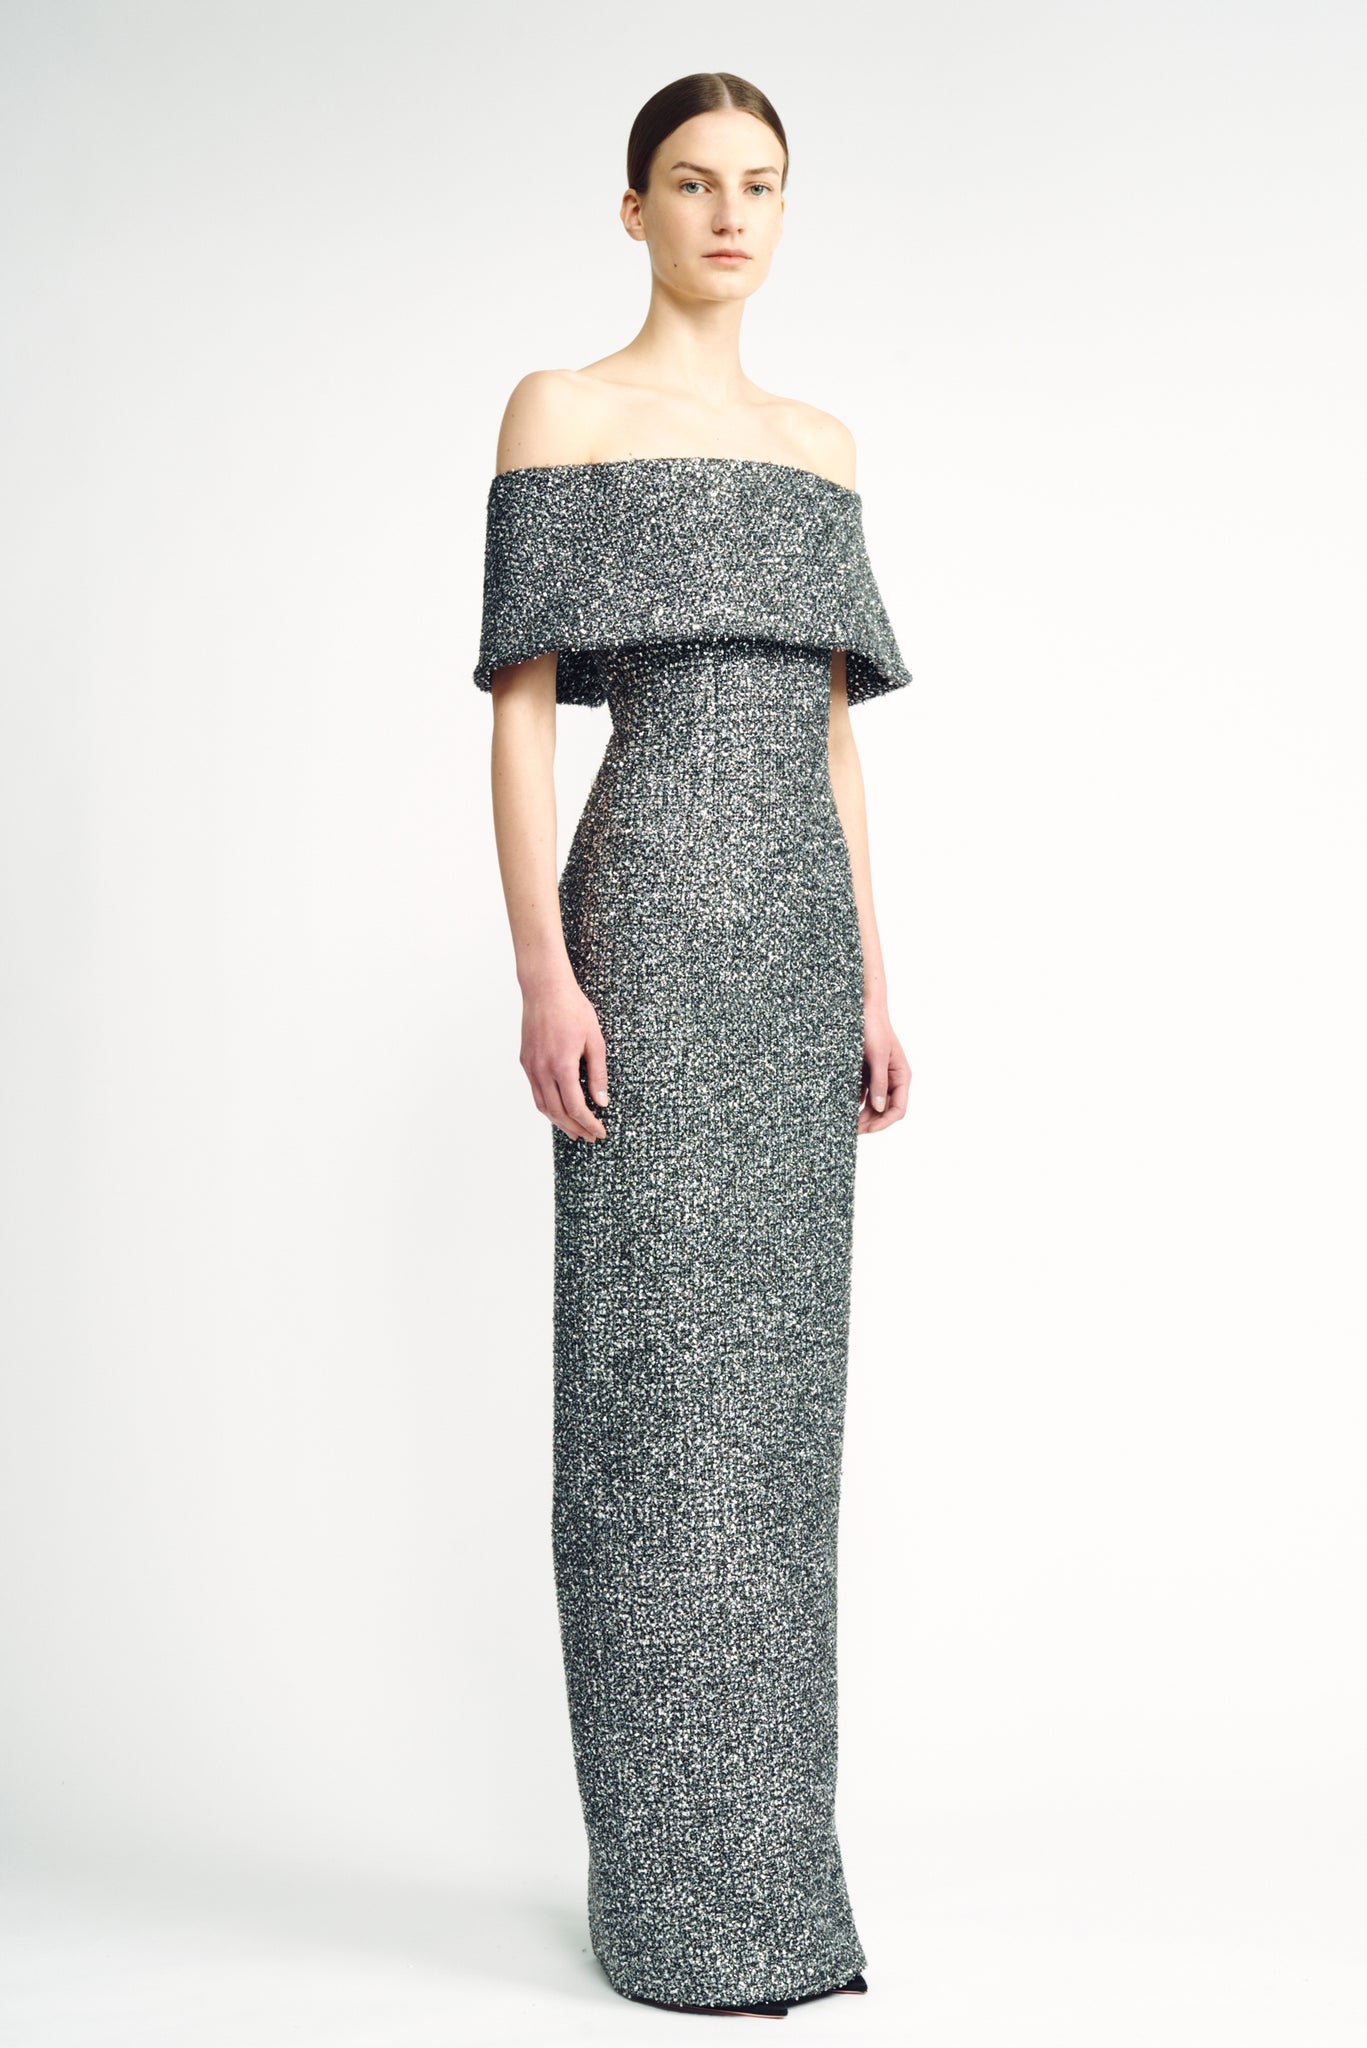 Emmanuella Dress | SIlver Tweed Lame Column Dress | Emilia Wickstead